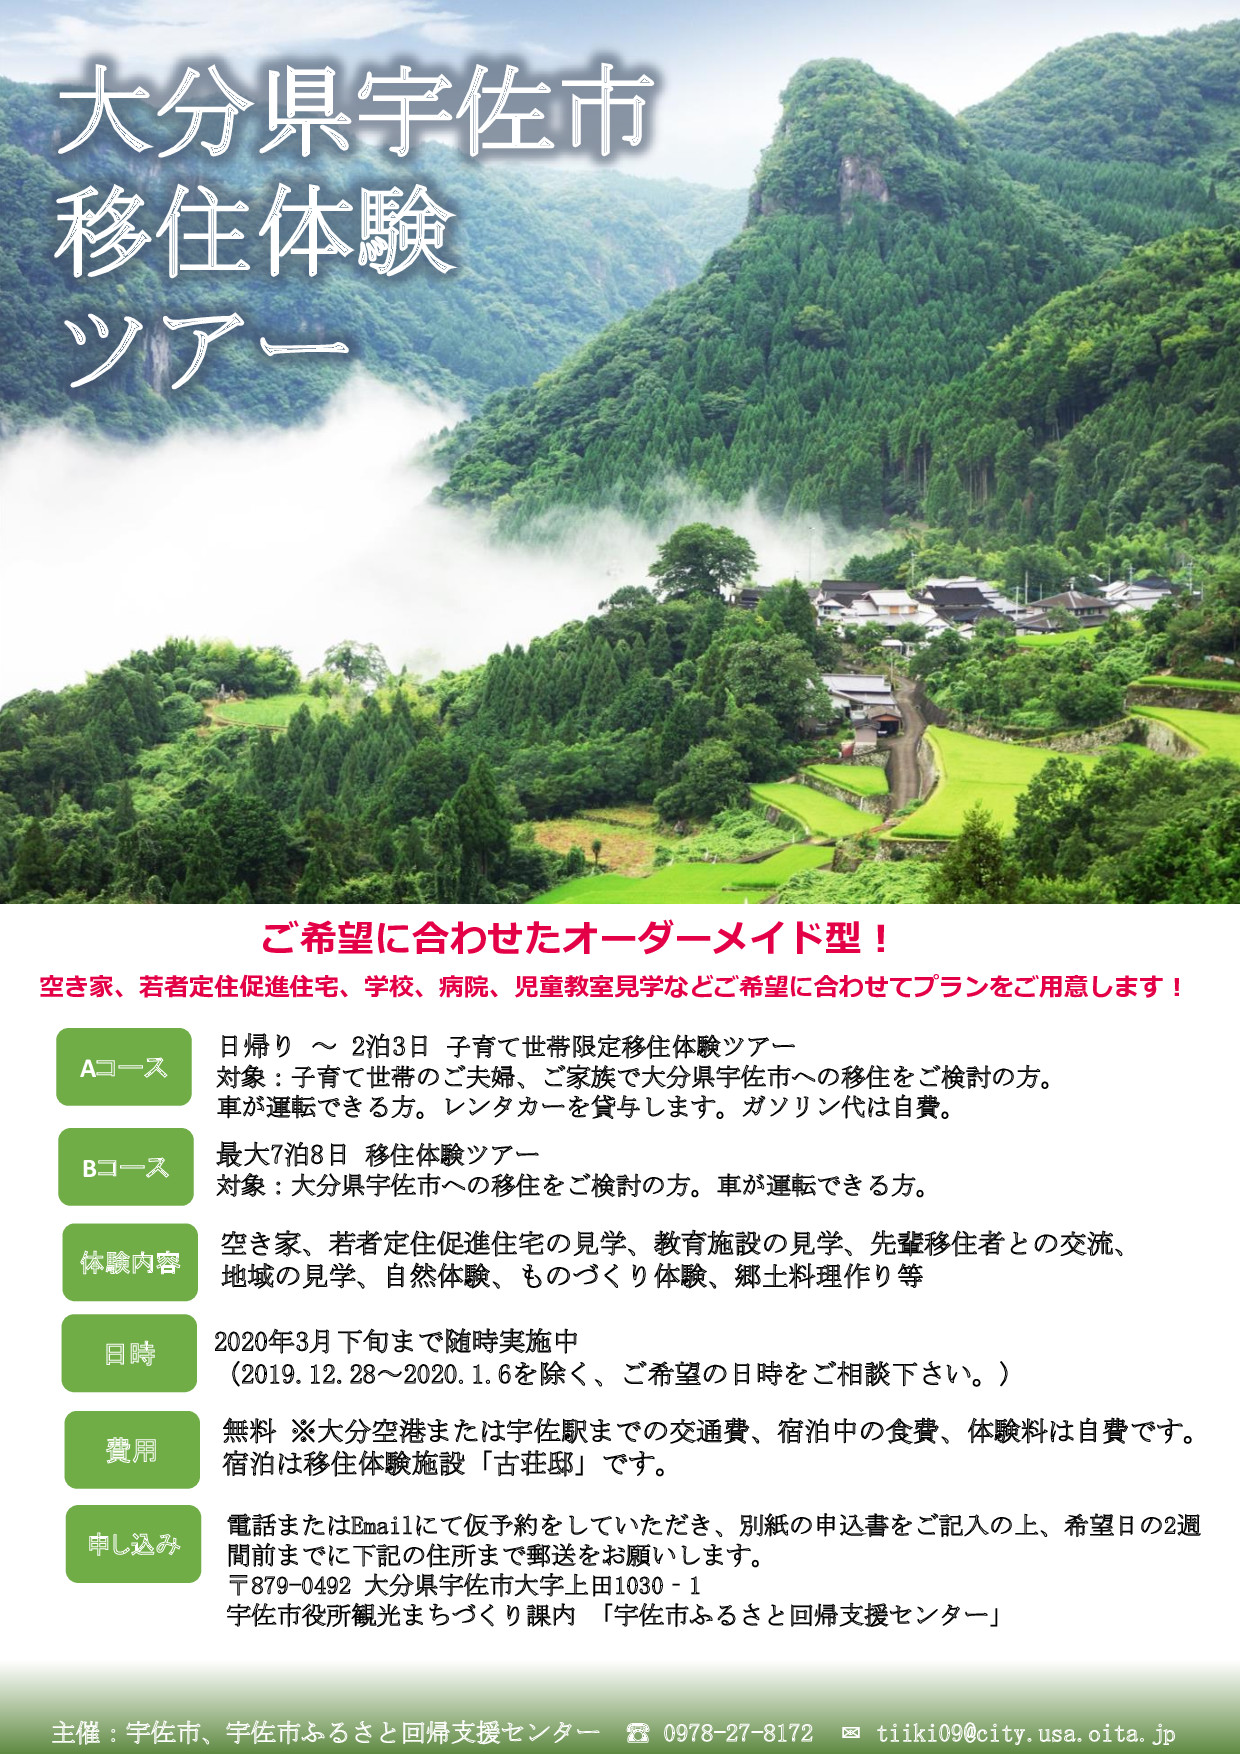 【宇佐市】移住体験ツアー | 移住関連イベント情報